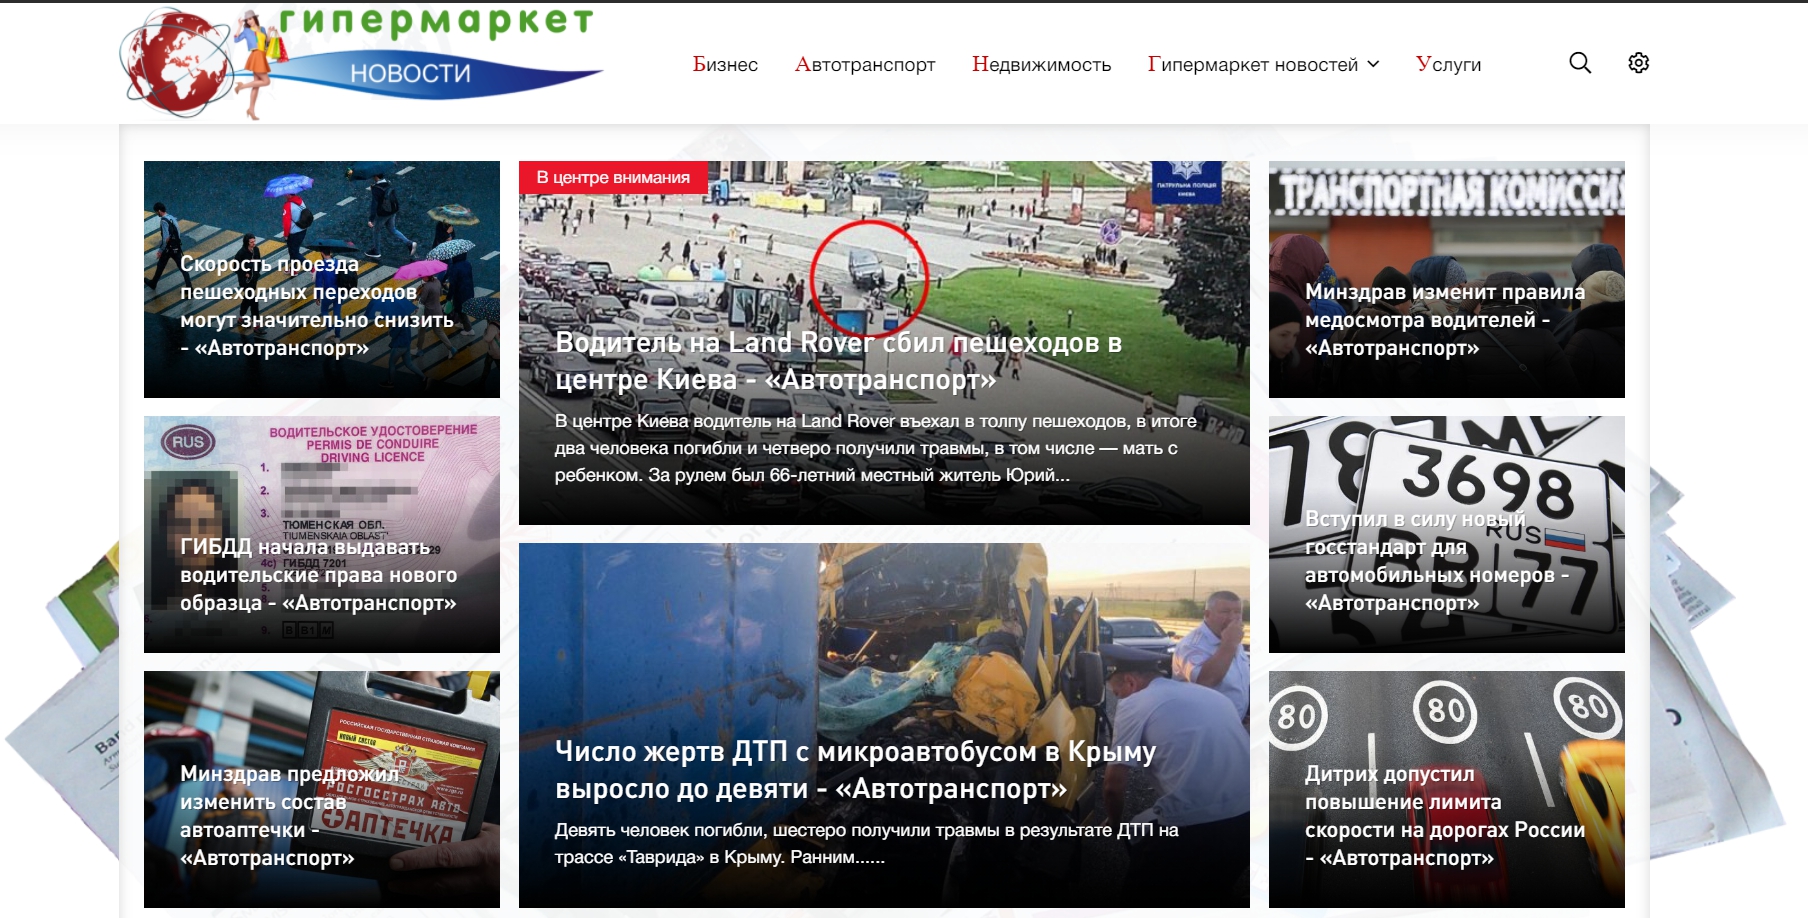 gimarket.ru - √ипермаркет новостей